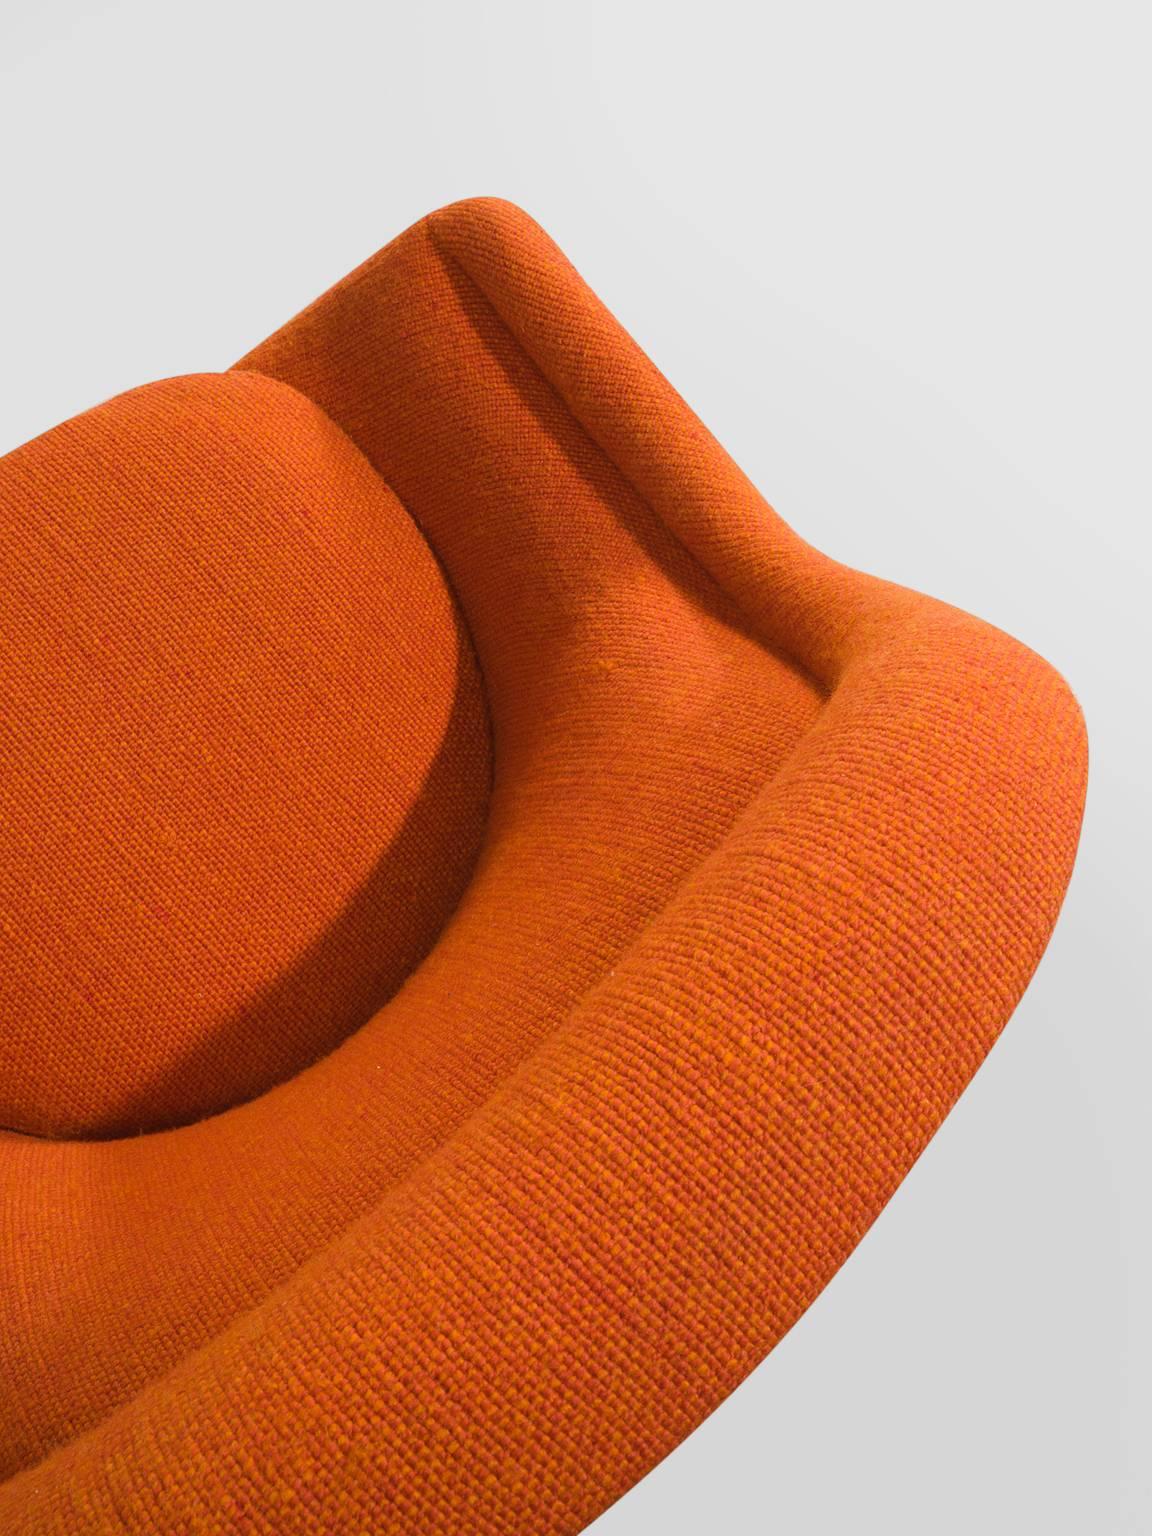 Warren Platner Easy Chair in Original Orange Fabric 1